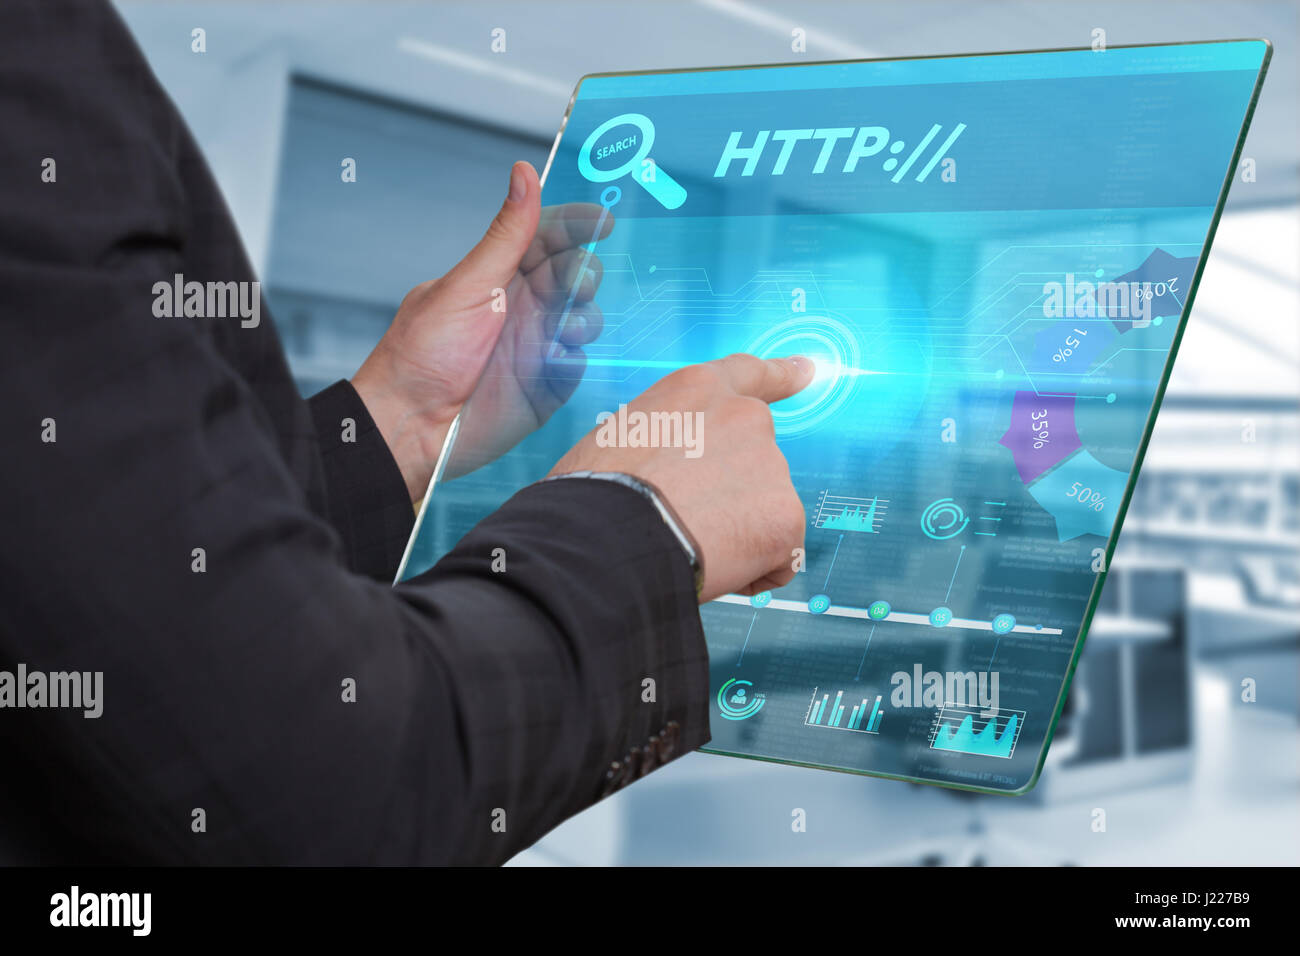 Business, Technologie, Internet und Netzwerk-Konzept. Geschäftsmann, arbeiten auf dem Tablett der Zukunft, wählen Sie auf dem virtuellen Display: HTTP:// Stockfoto